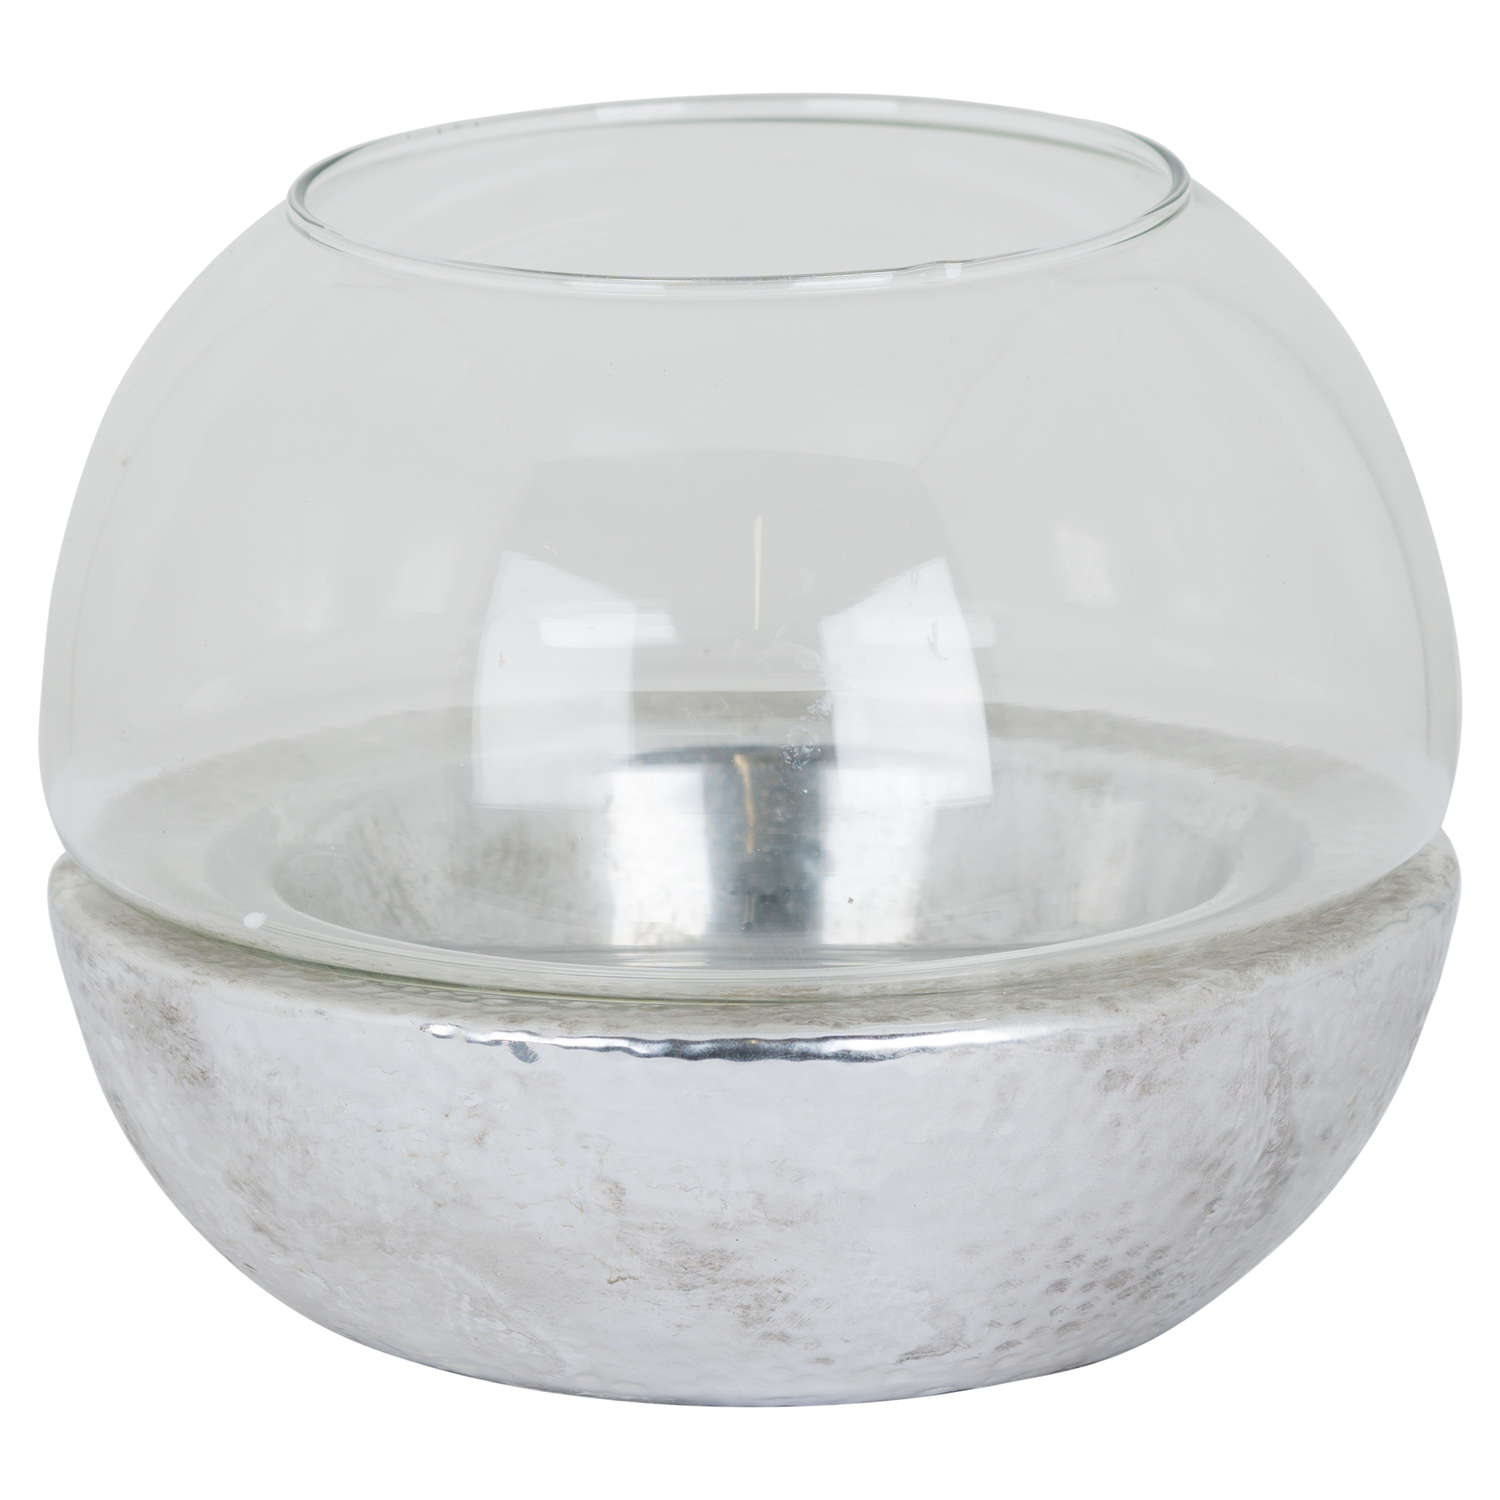 Metallic Ceramic Spherical Hurricane Lantern - Image 1